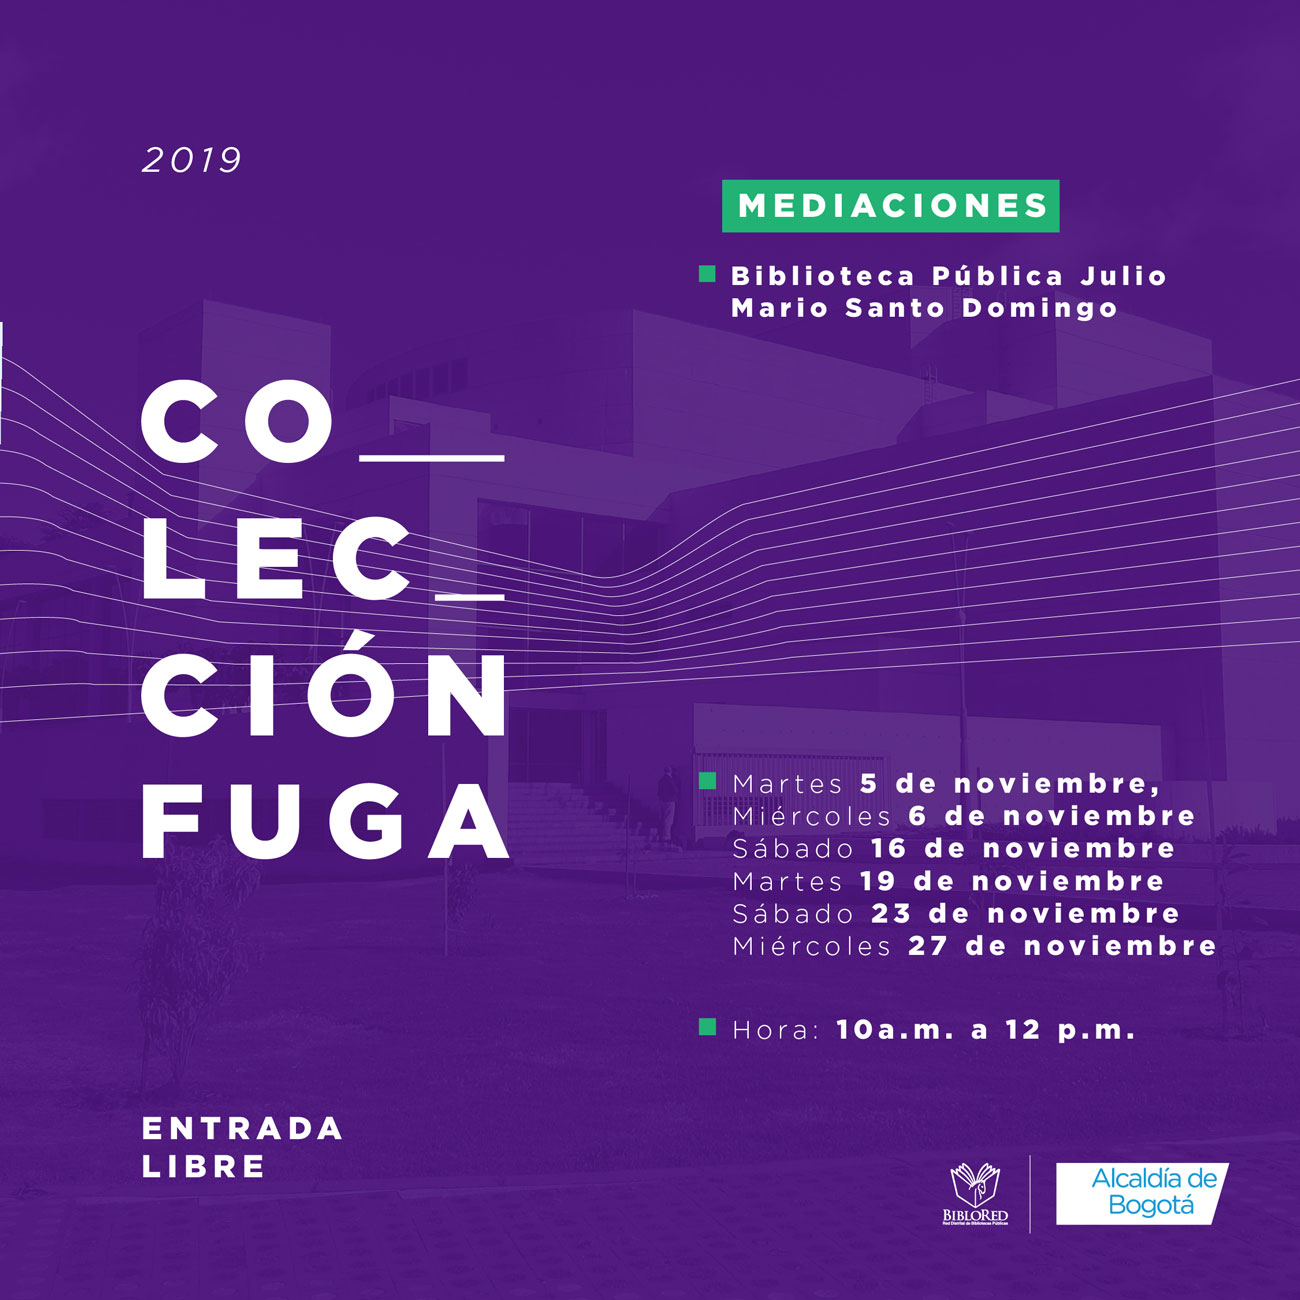 Colección FUGA en la Biblioteca Pública Julio Mario Santo Domingo